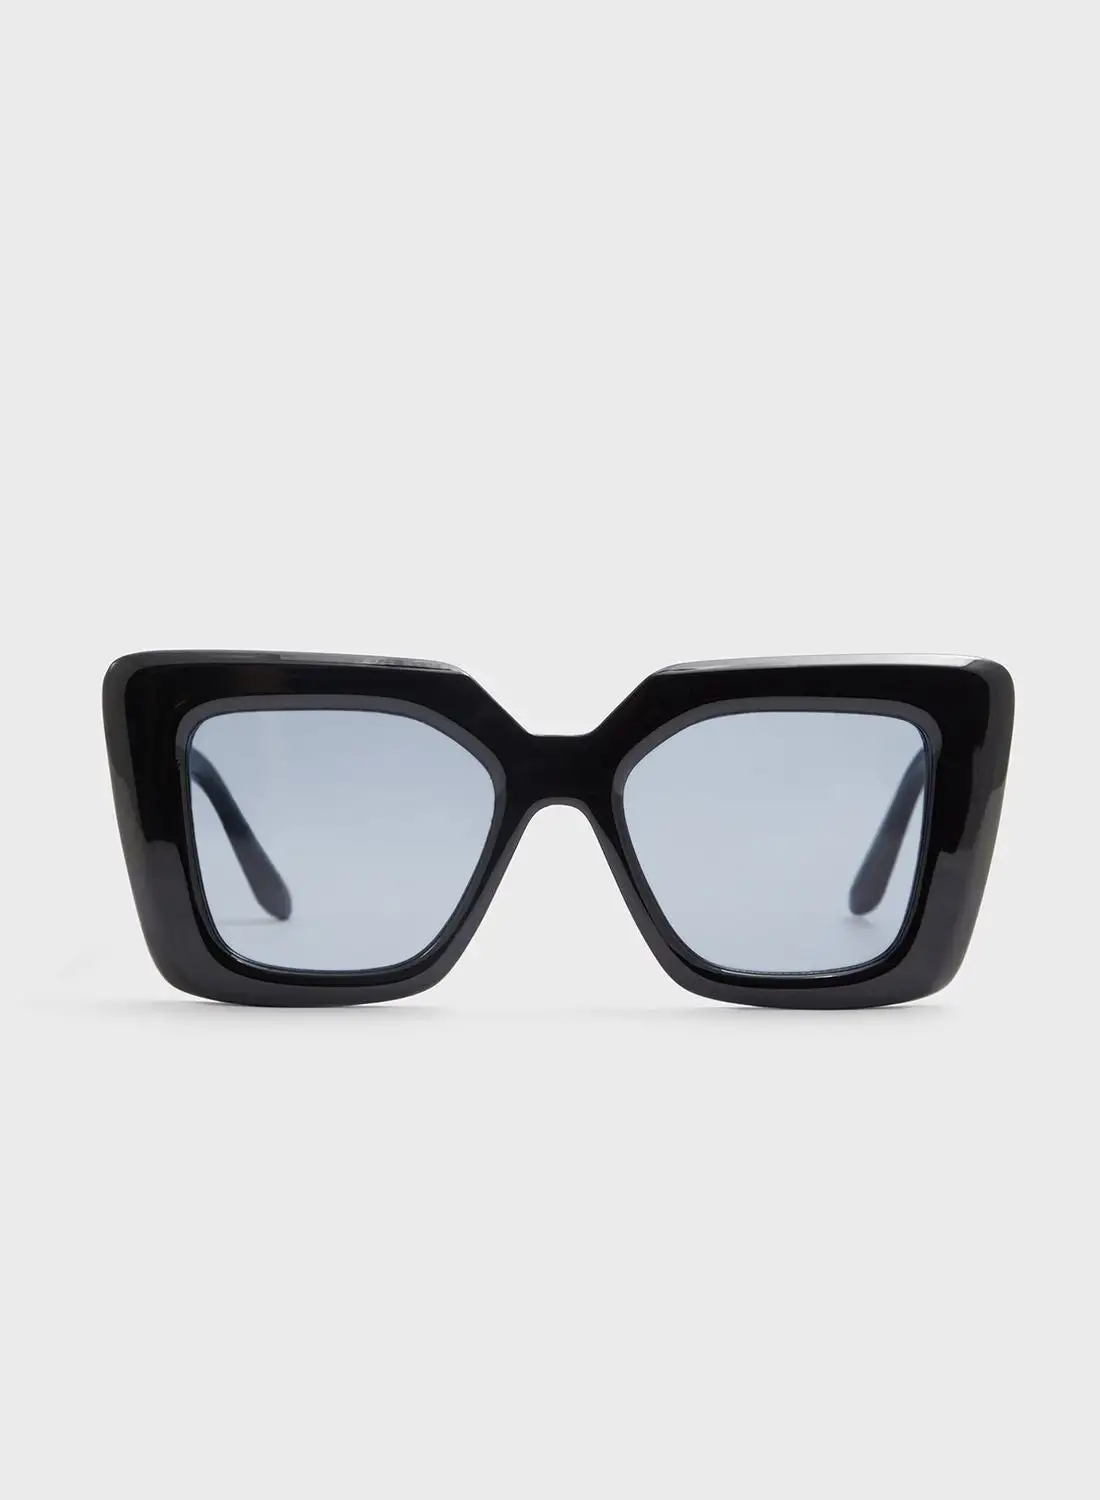 نظارات ألدو فوغار الشمسية